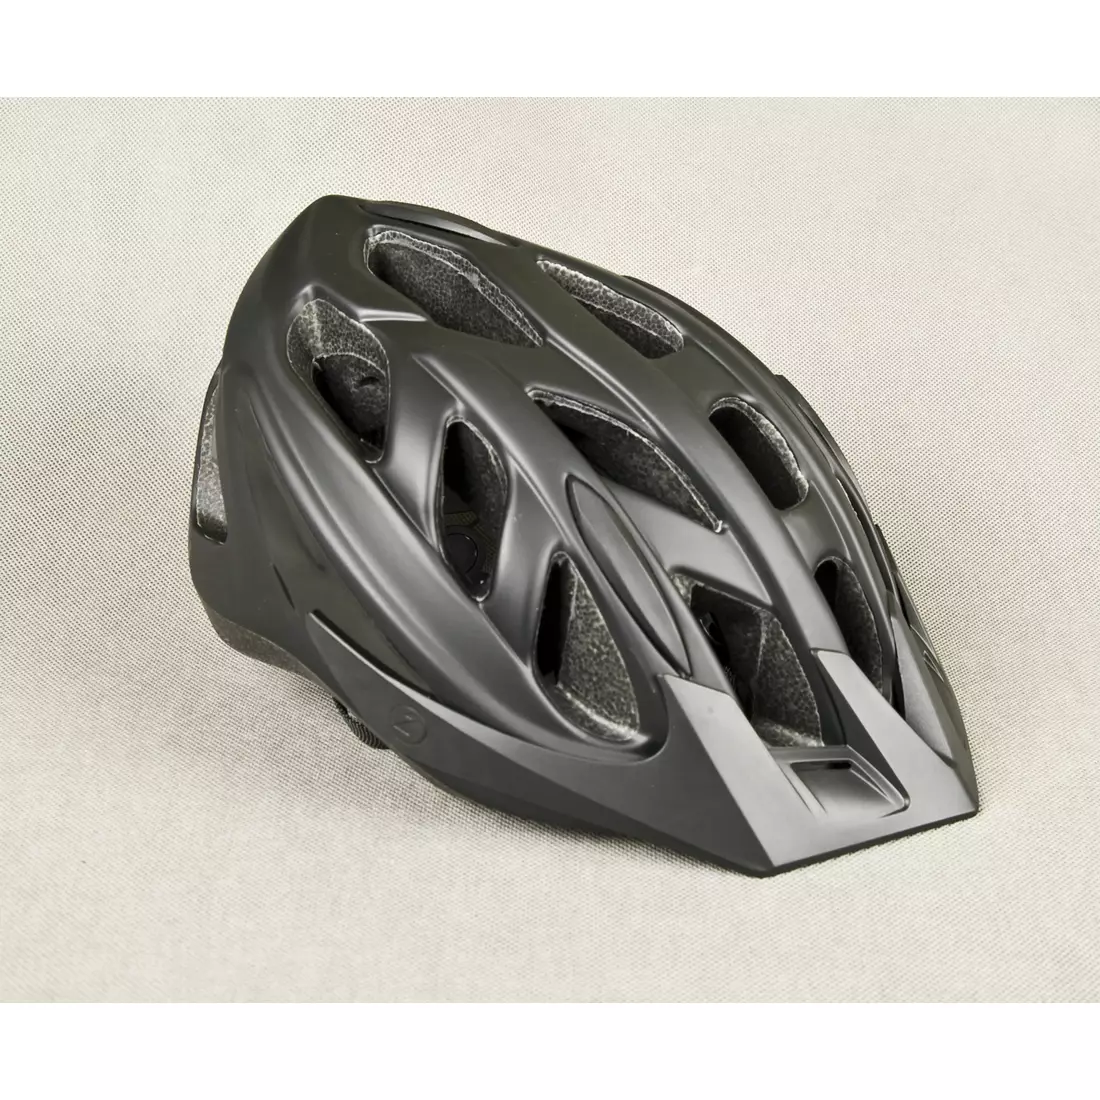 Casca de bicicleta LAZER - CYCLONE MTB, culoare: negru mat